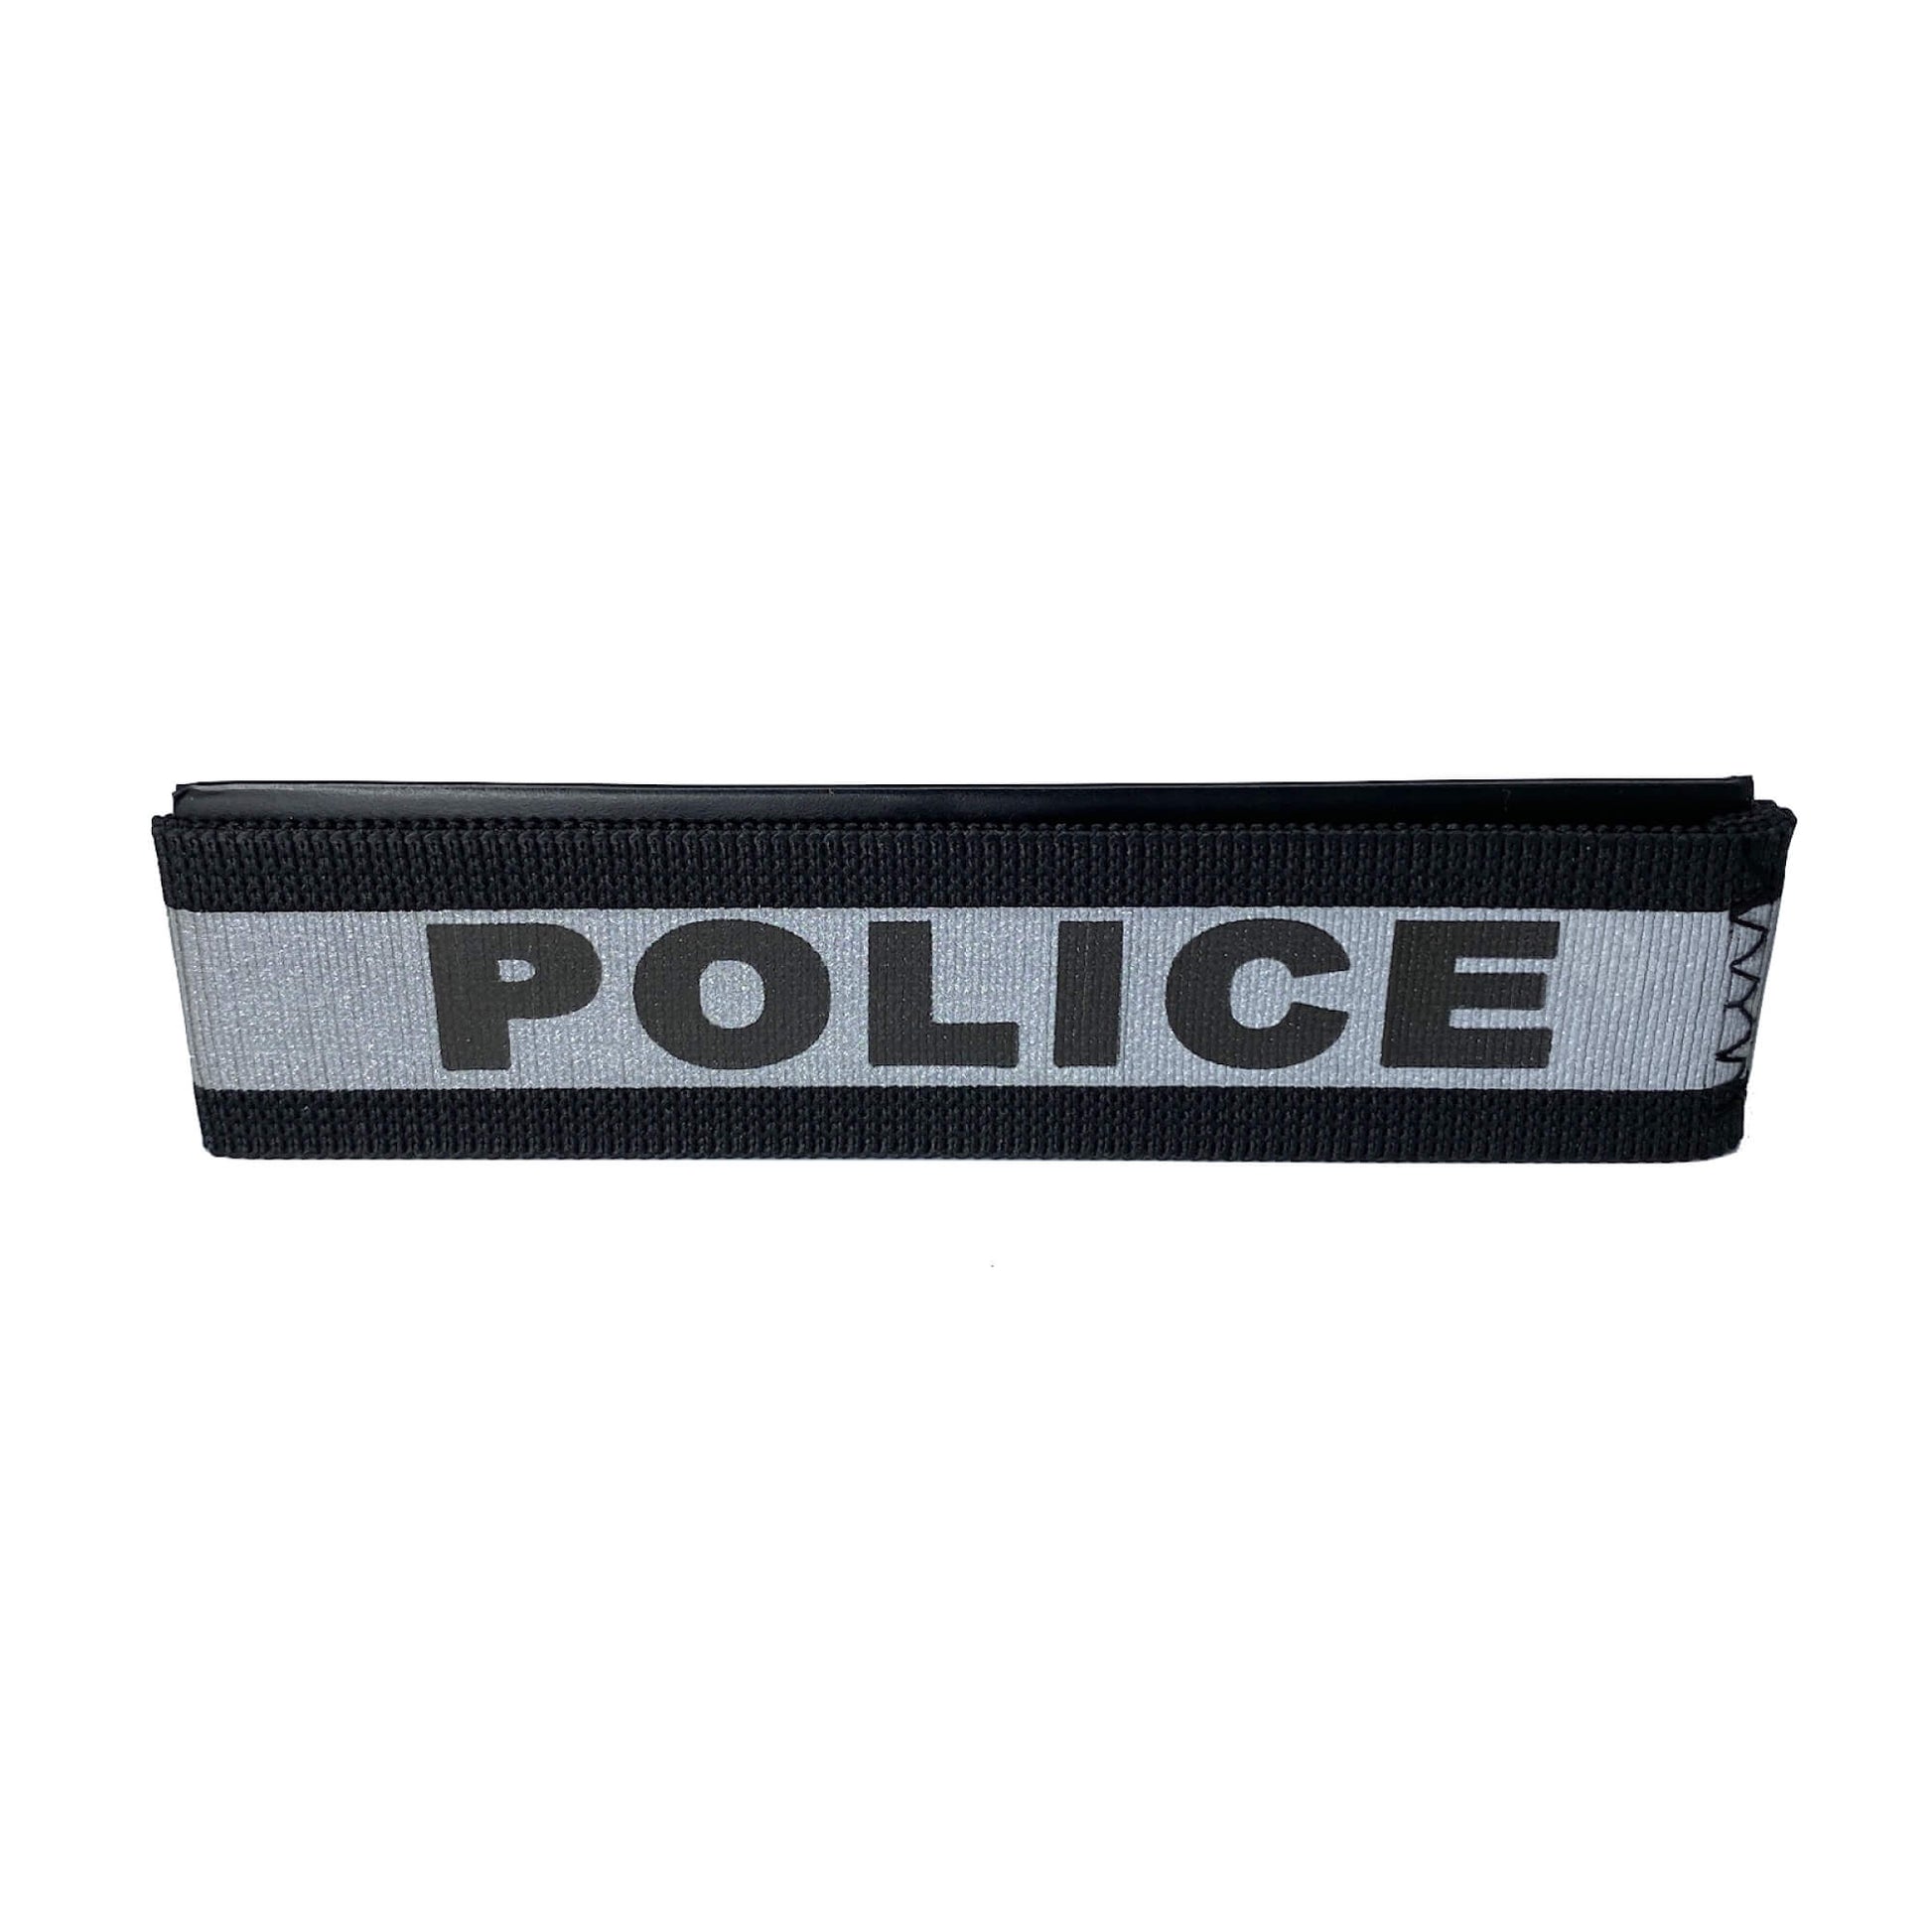 Police Reflective 3M Notebook ID Band-911 Duty Gear USA-911 Duty Gear USA